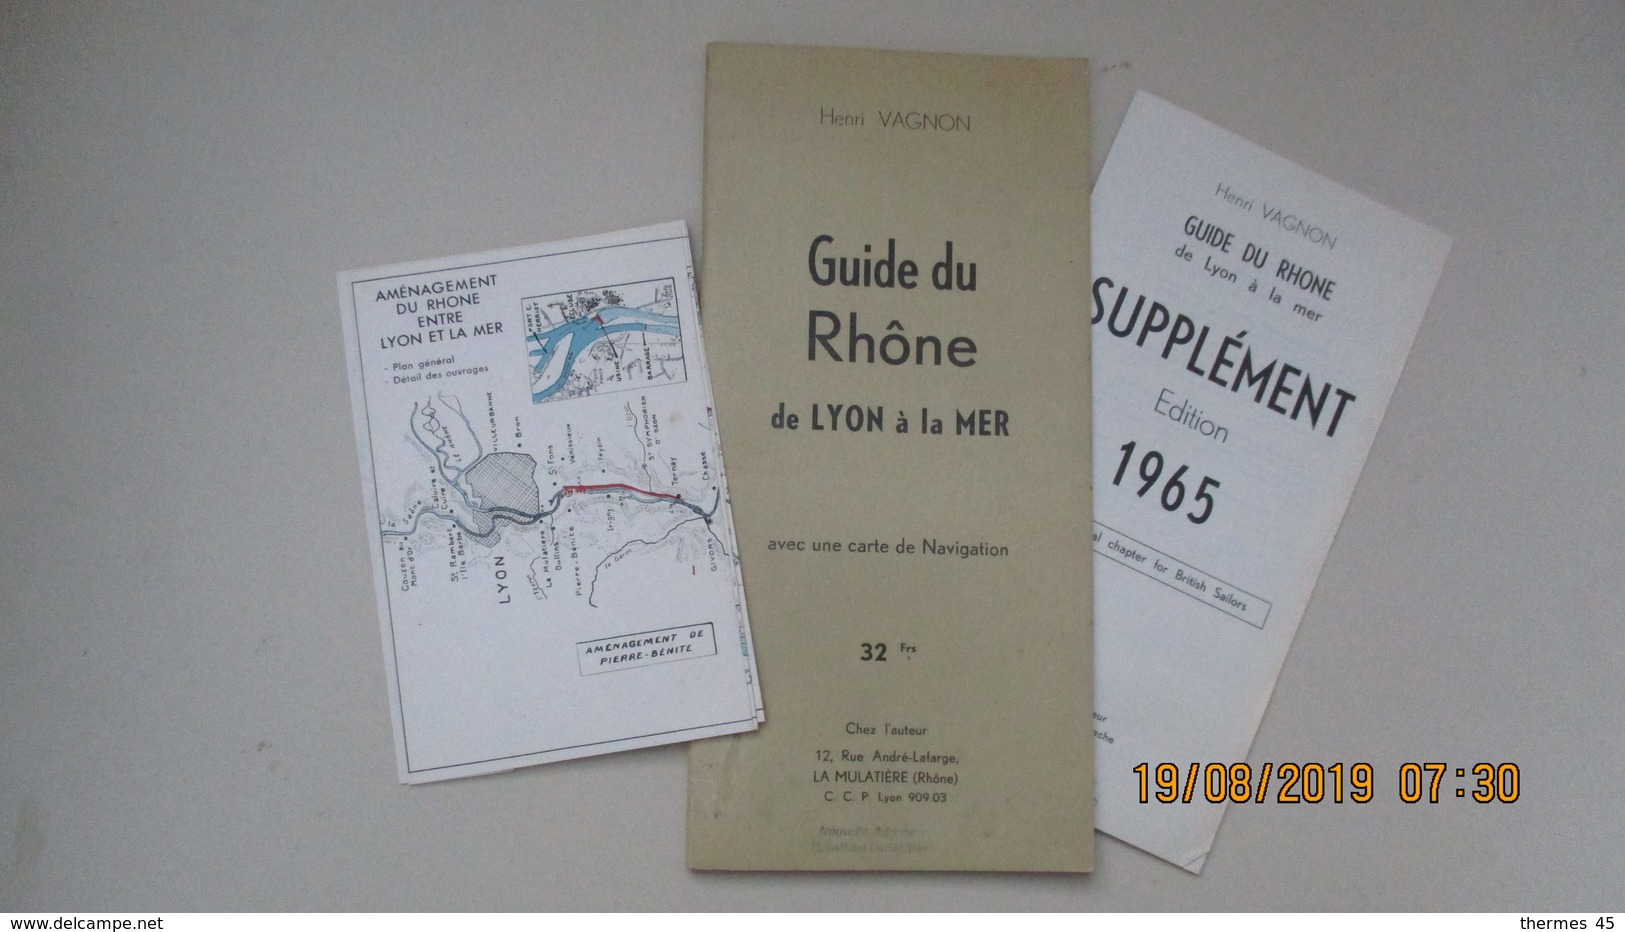 GUIDE DU RHÔNE De LYON à La MER / HENRI VAGNON / 1964 - Nautical Charts